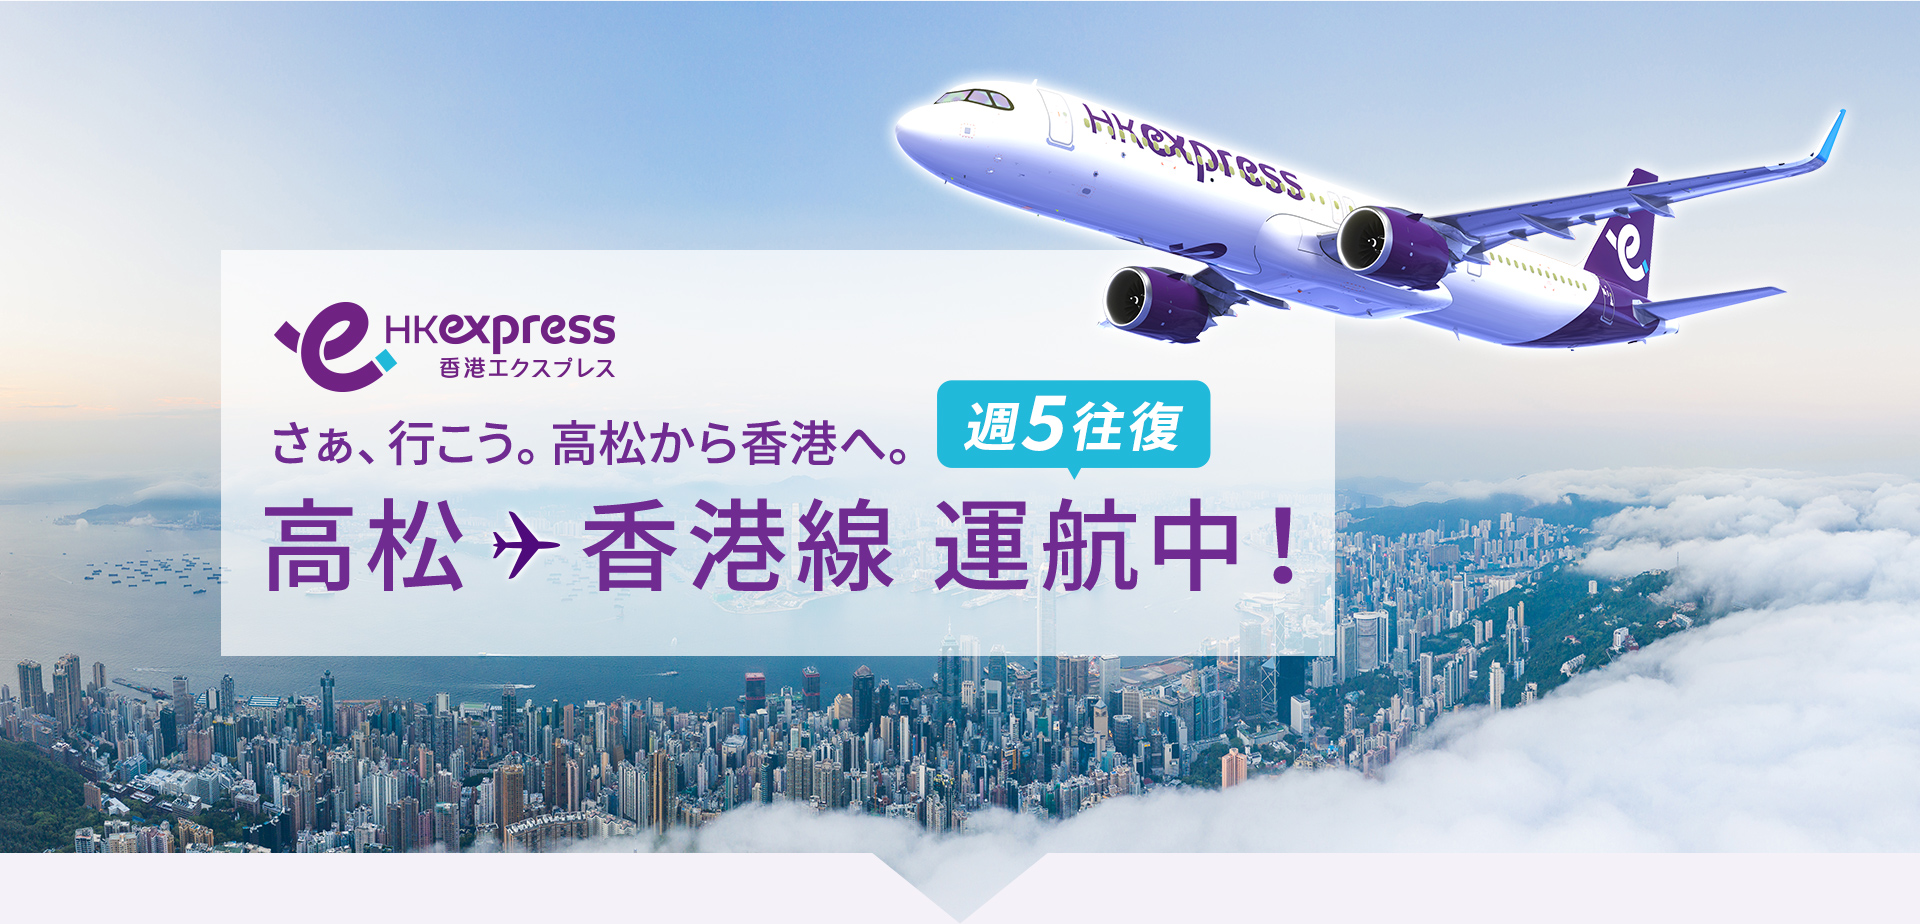 HKexpress 高松 - 香港線 直行便運航中